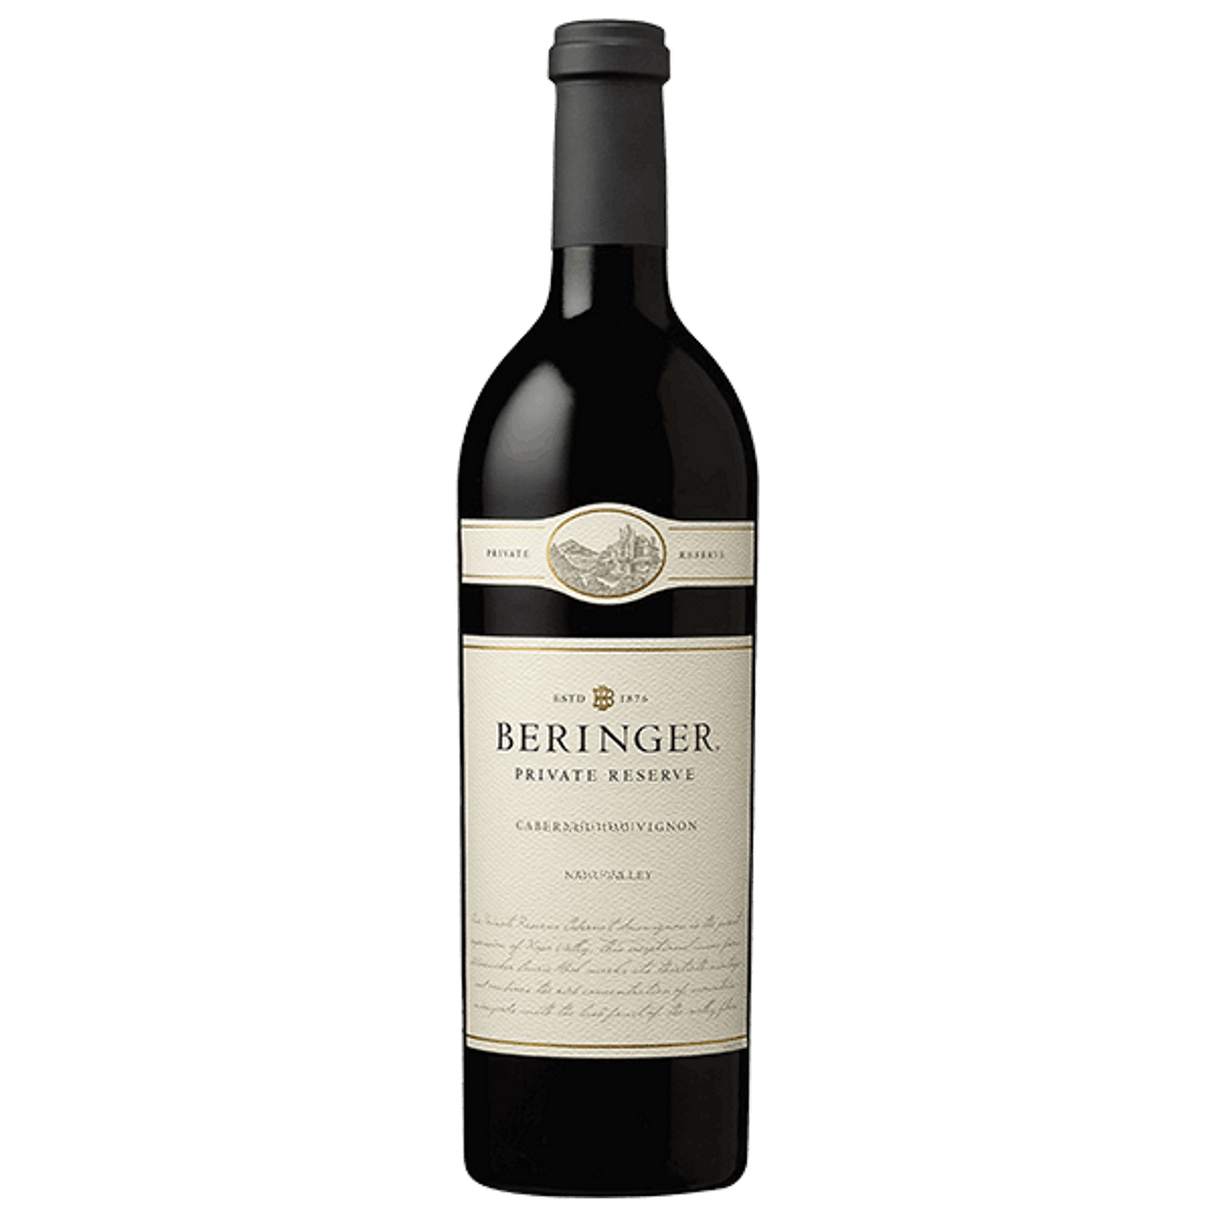 Beringer Private Reserve Cabernet Sauvignon 2015 (Single bottle)